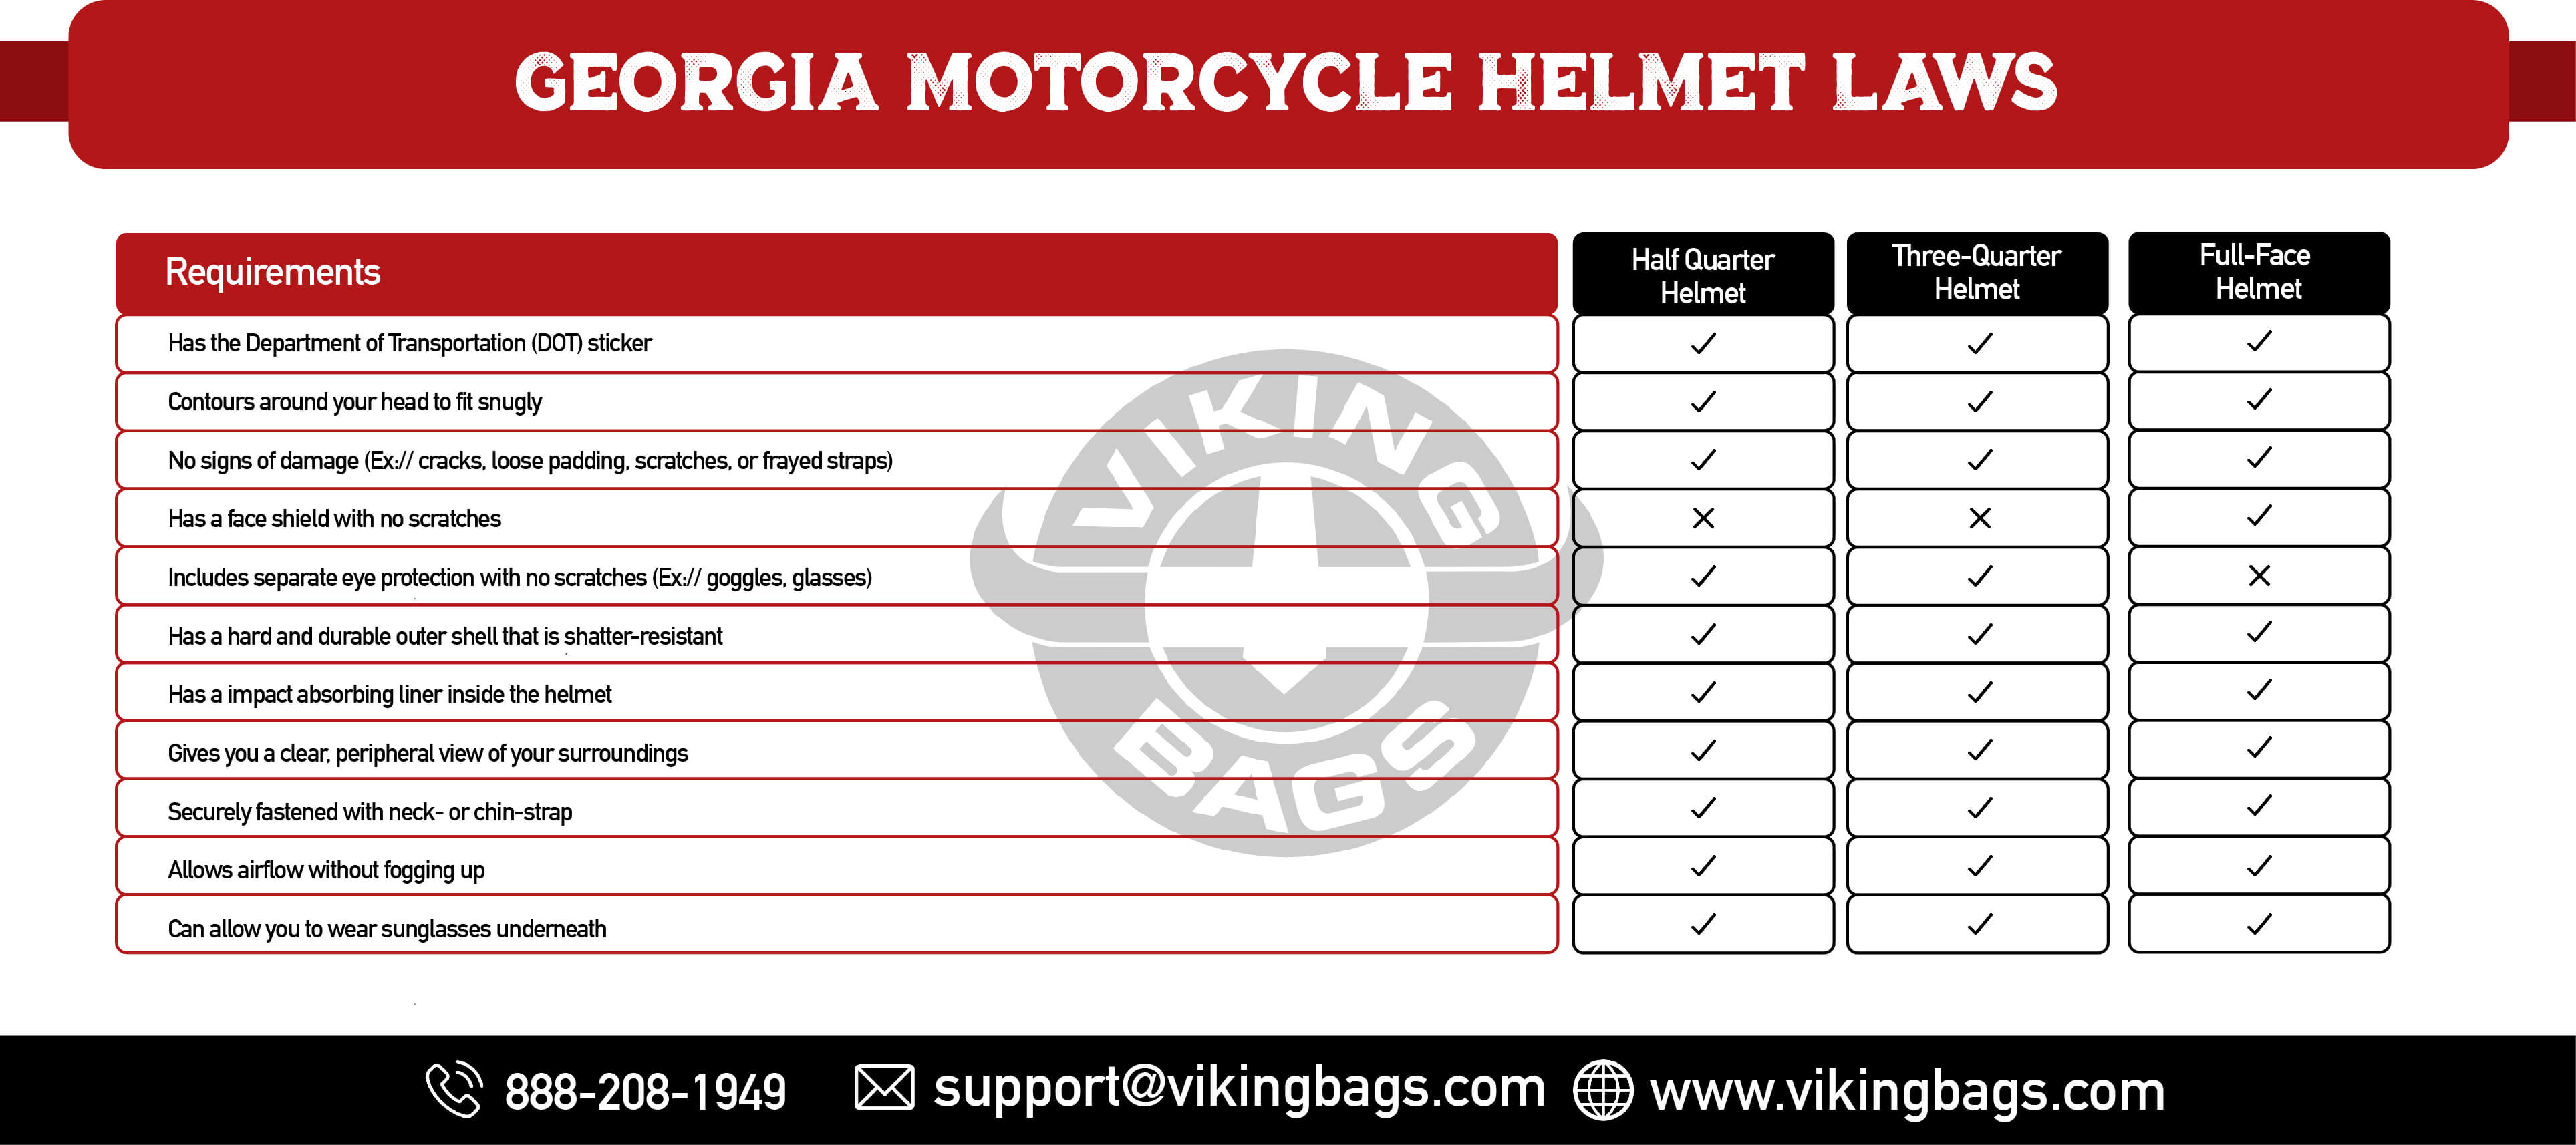 Georgia Motorcycle Helmet Laws